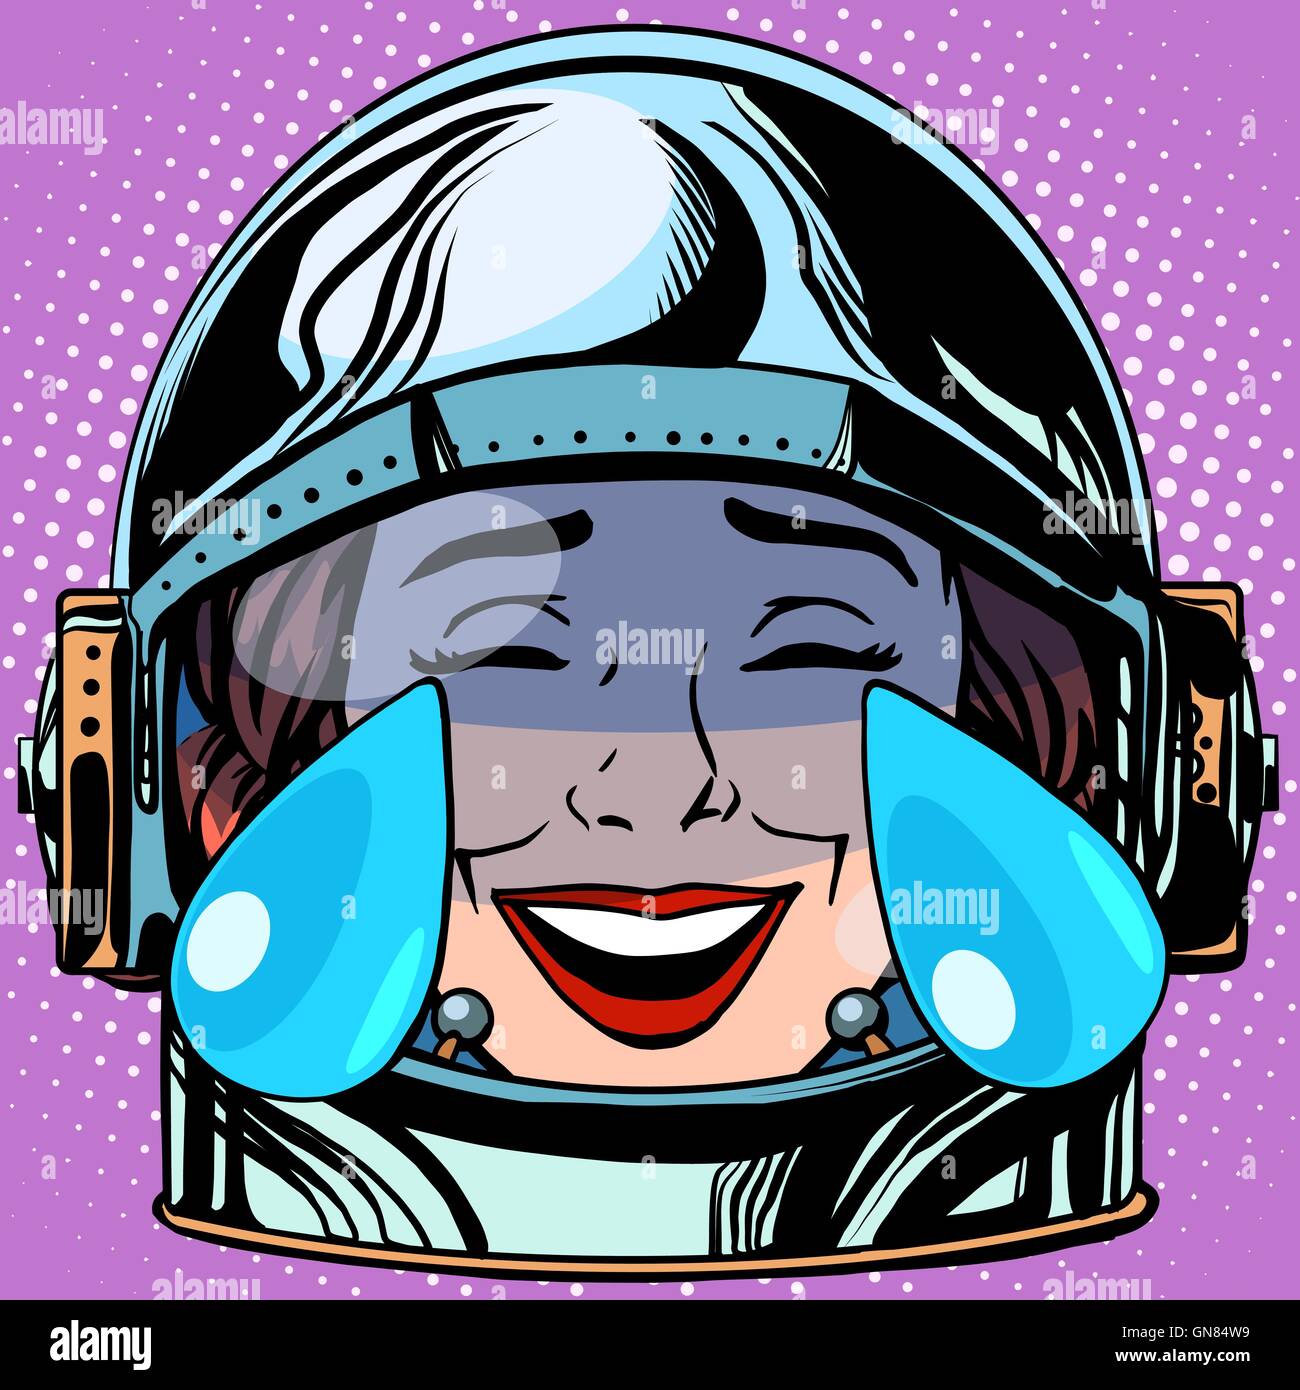 emoticon tears of joy Emoji face woman astronaut retro Stock Vector